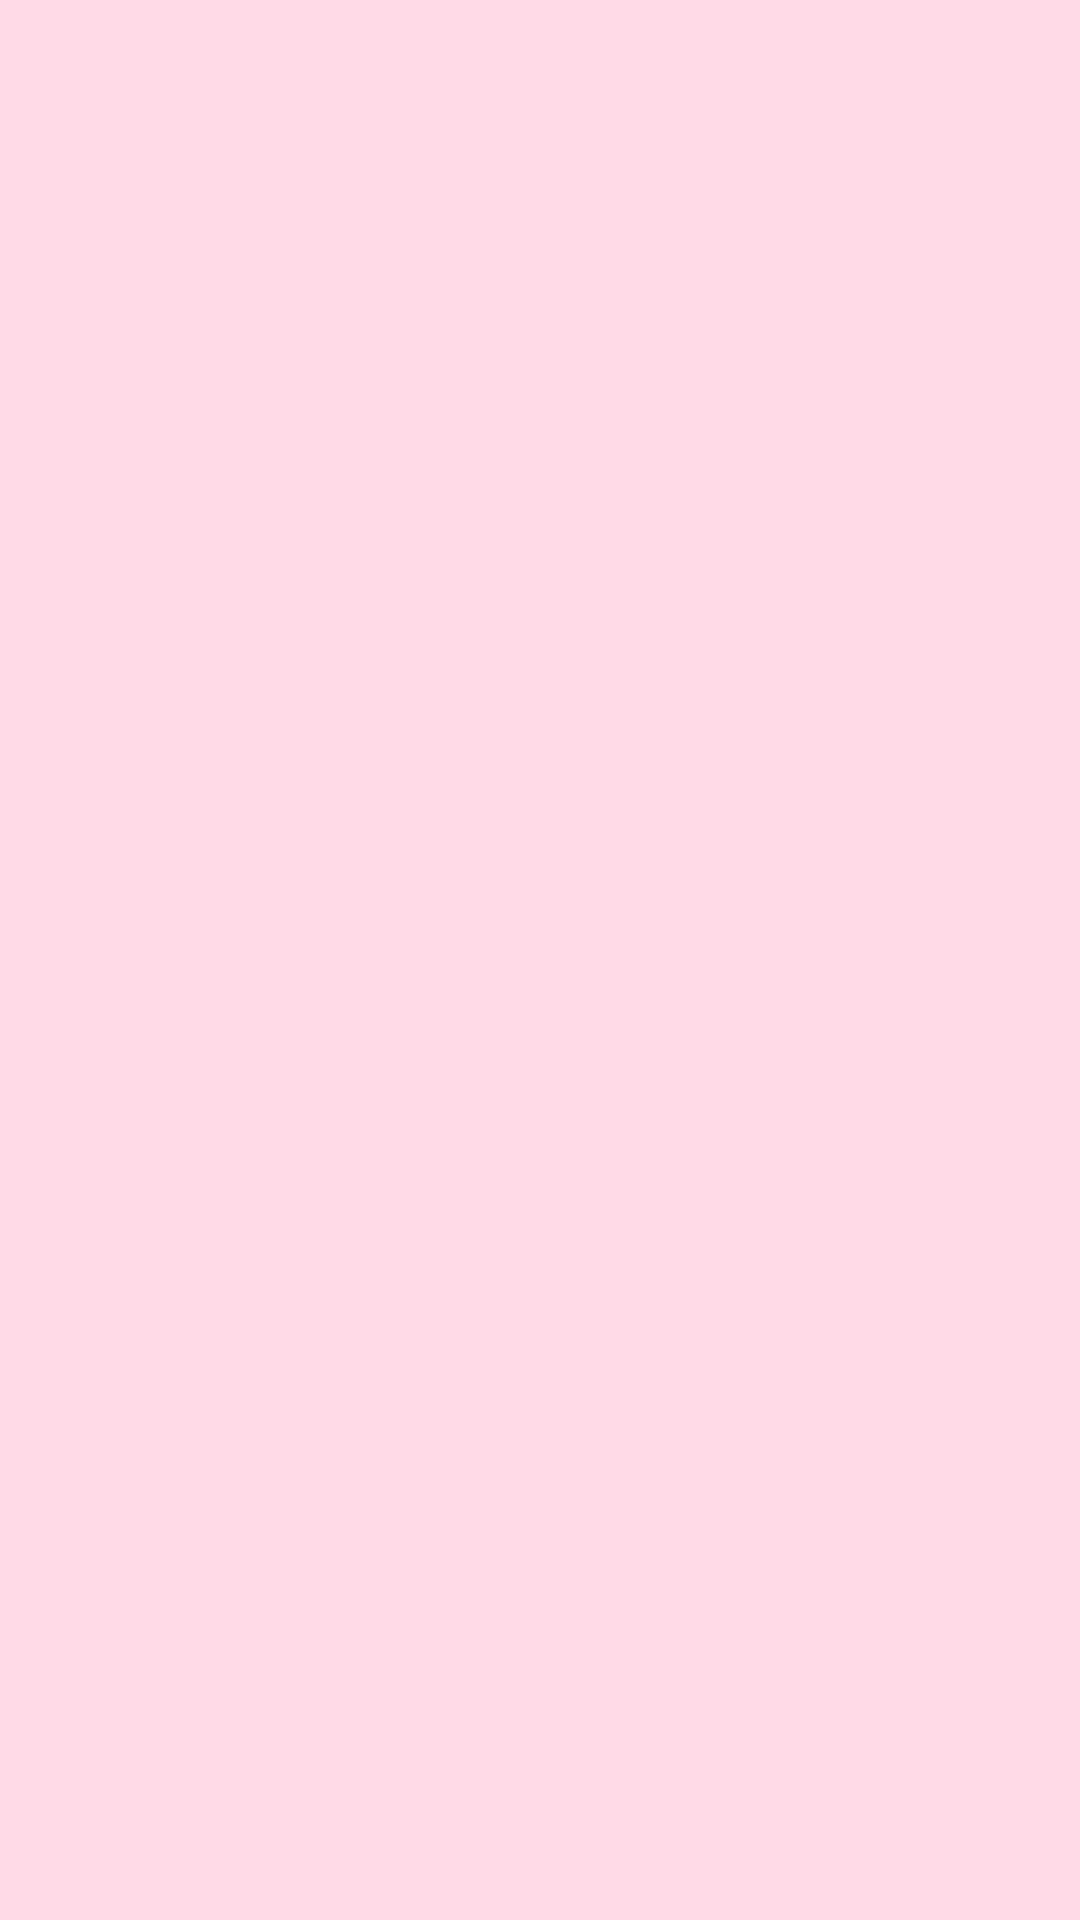 Cute Plain Pink